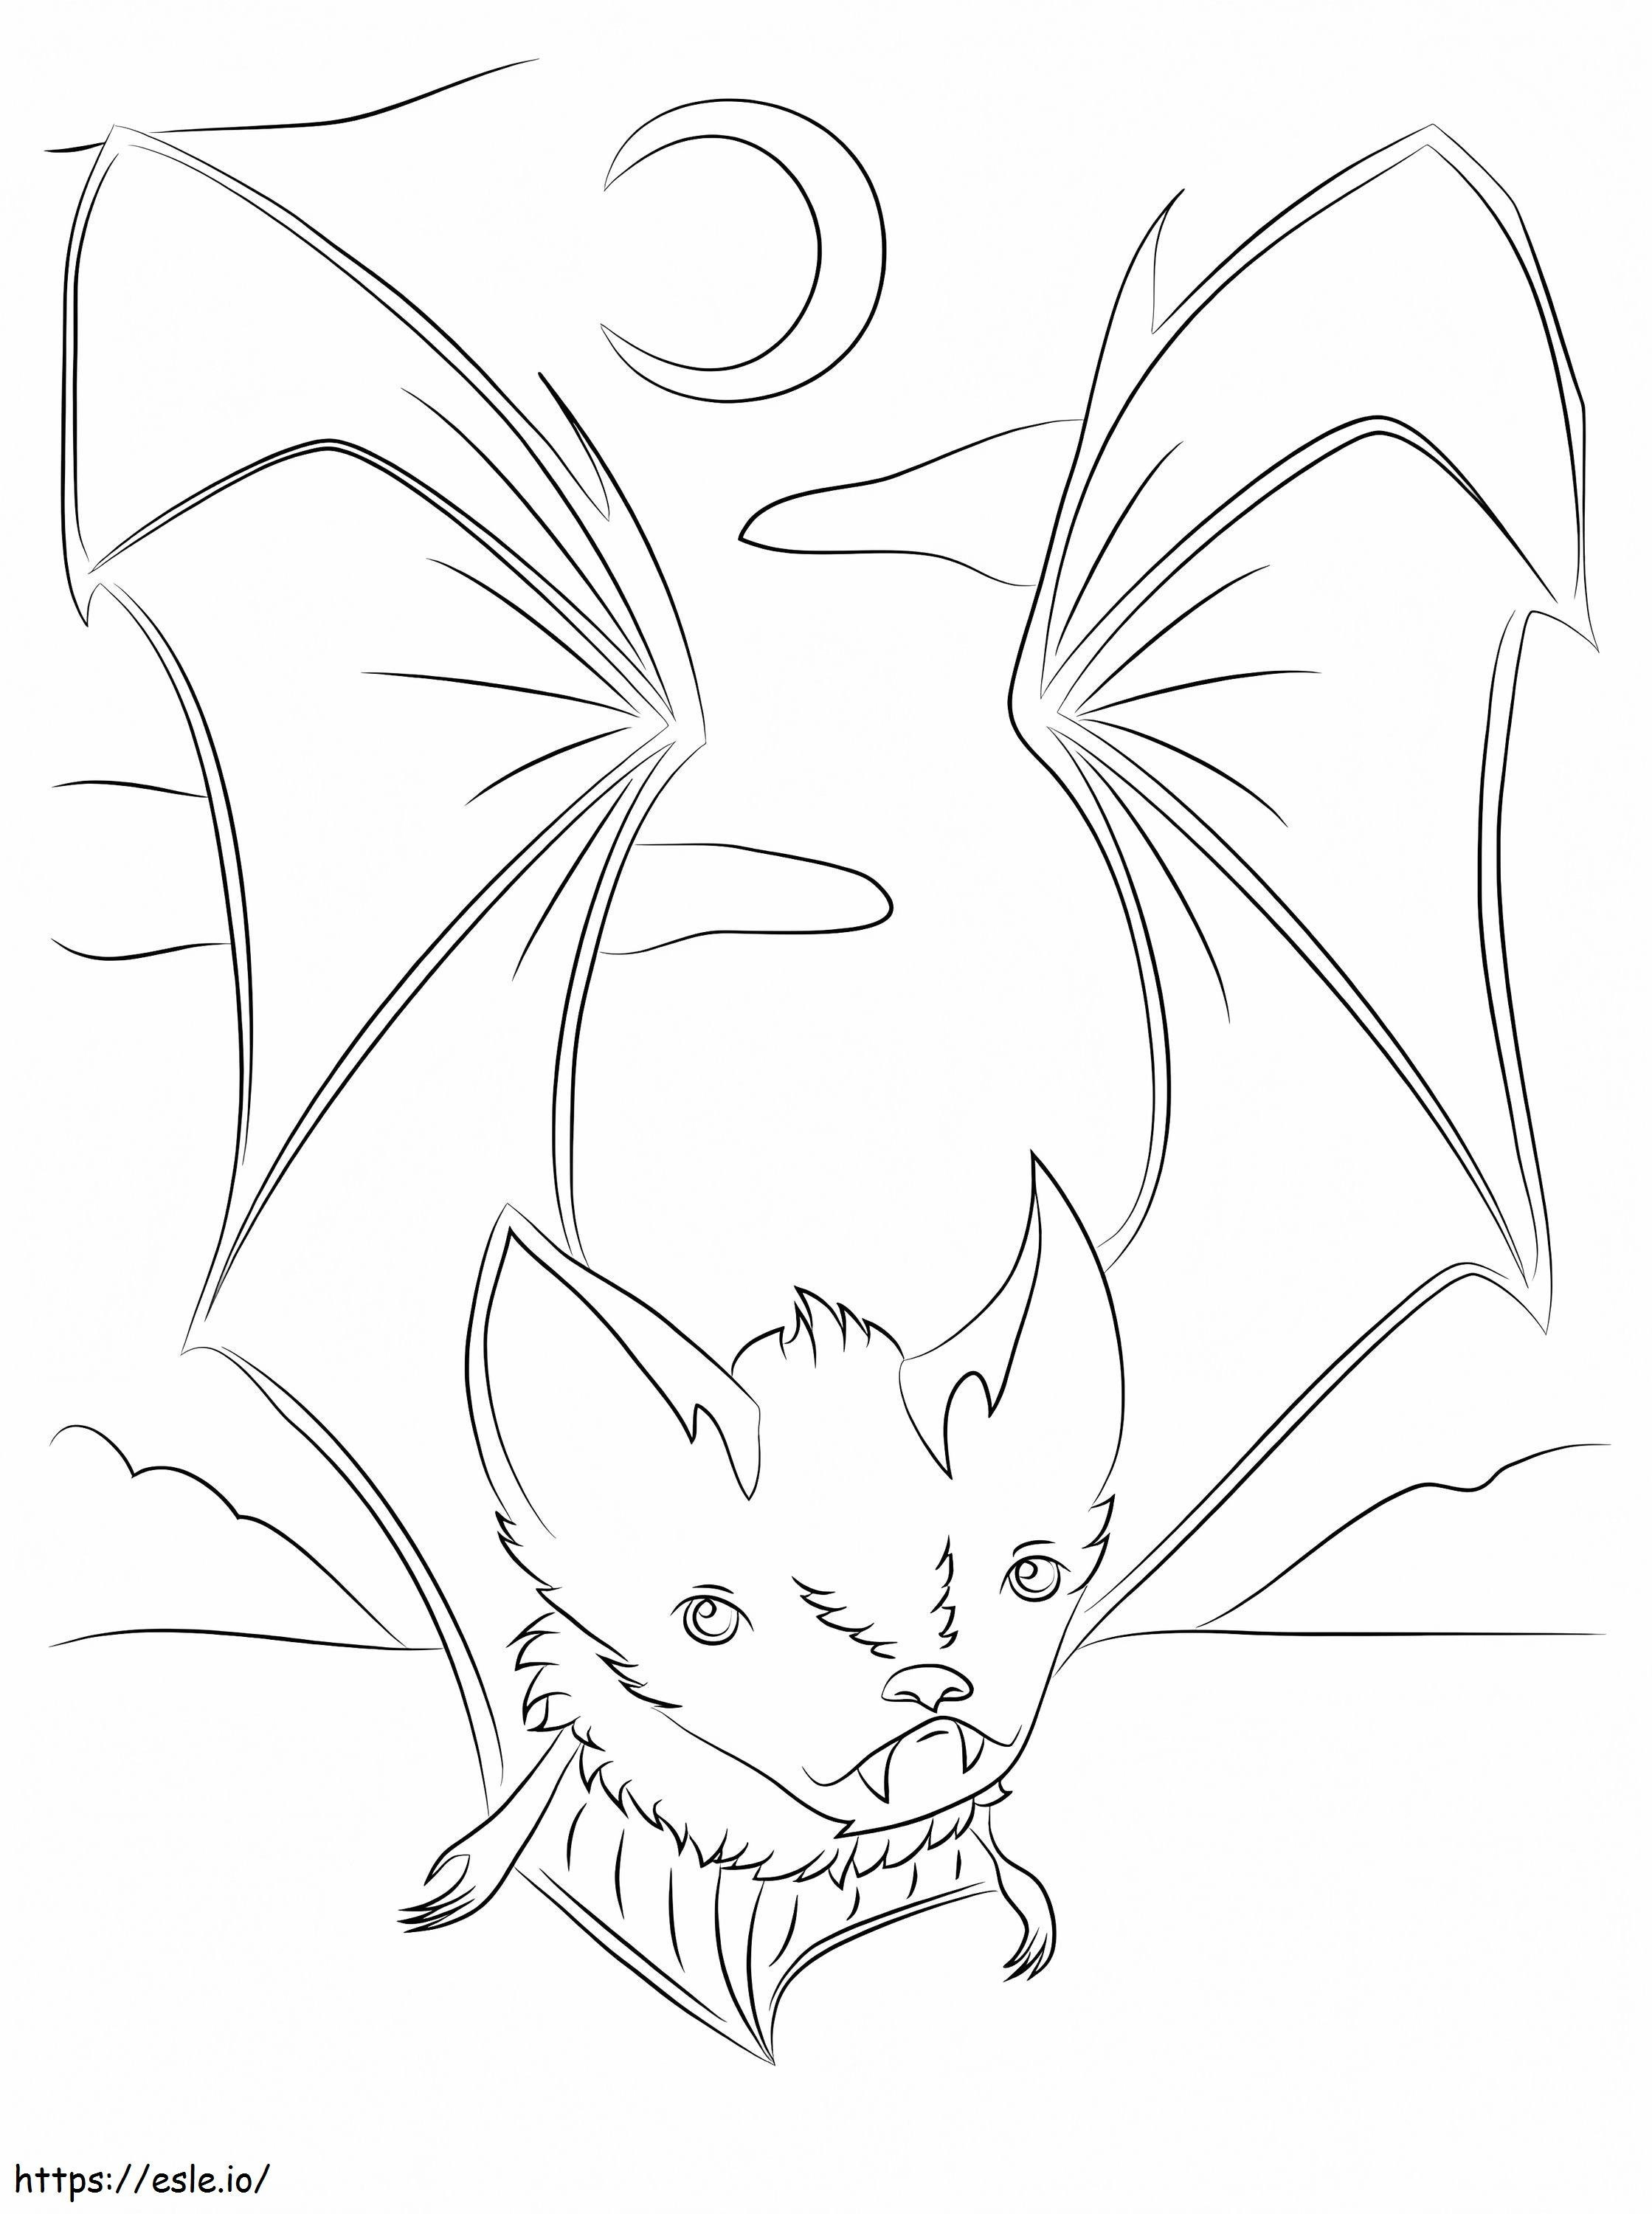 Um morcego fofo para colorir